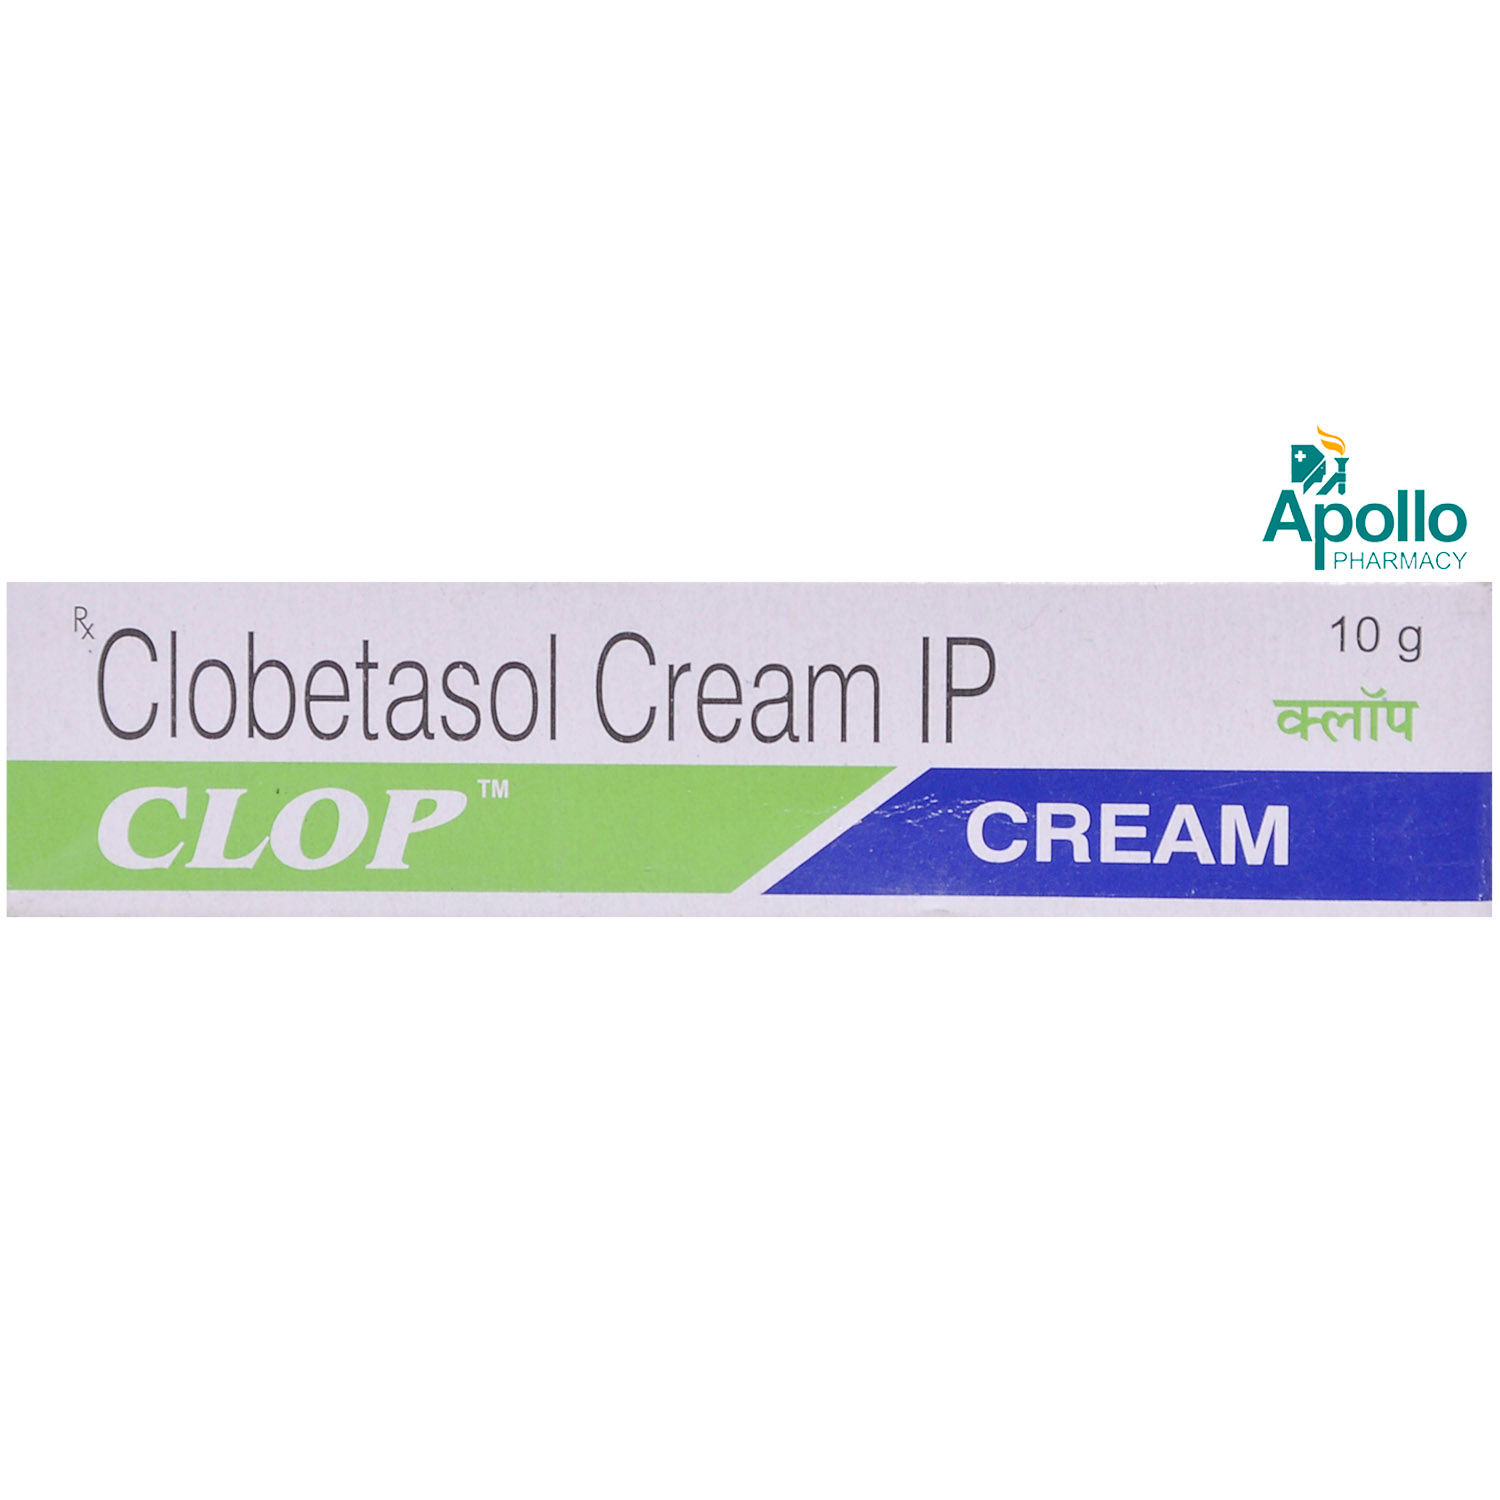 Buy Clop Cream 10 gm Online